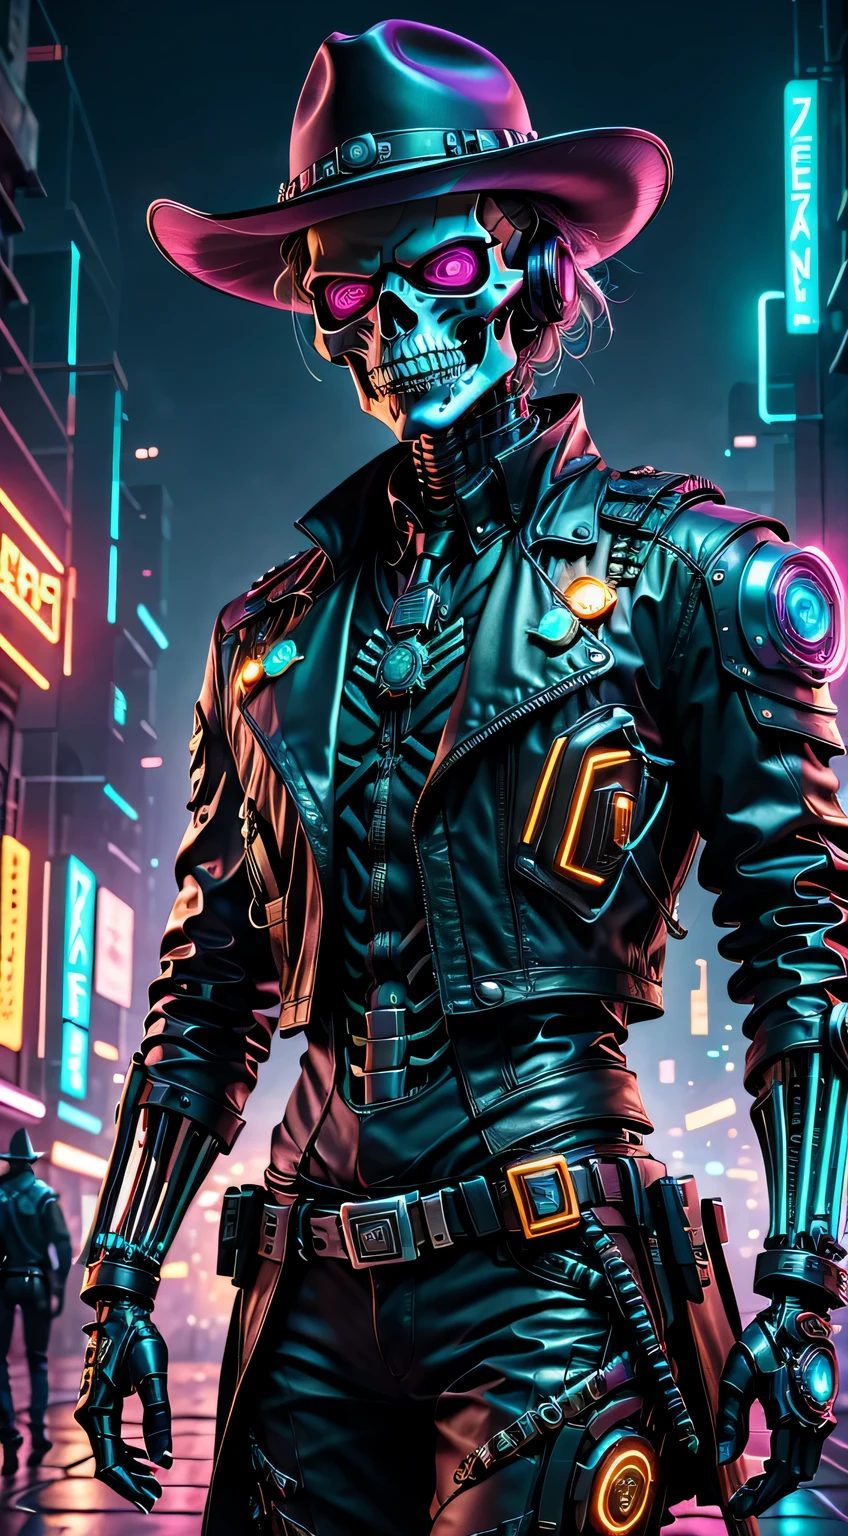 personagem cyberpunk,Esqueleto Robô Cowboy Xerife,Fundo escuro misterioso,luz neon,ciberneticamente melhorado,Armas do futuro,usando um chapéu de cowboy+luz neon边缘,braço biônico,queixo metálico,olhos vermelhos luminosos,cidade distópica,foco nítido,textura de aço,vibrante com cores,estilo de arte conceitual.(melhor qualidade,4K,8K,Uma alta resolução,obra-prima:1.2),ultra-detalhado,(real,photoreal,photo-real:1.37),